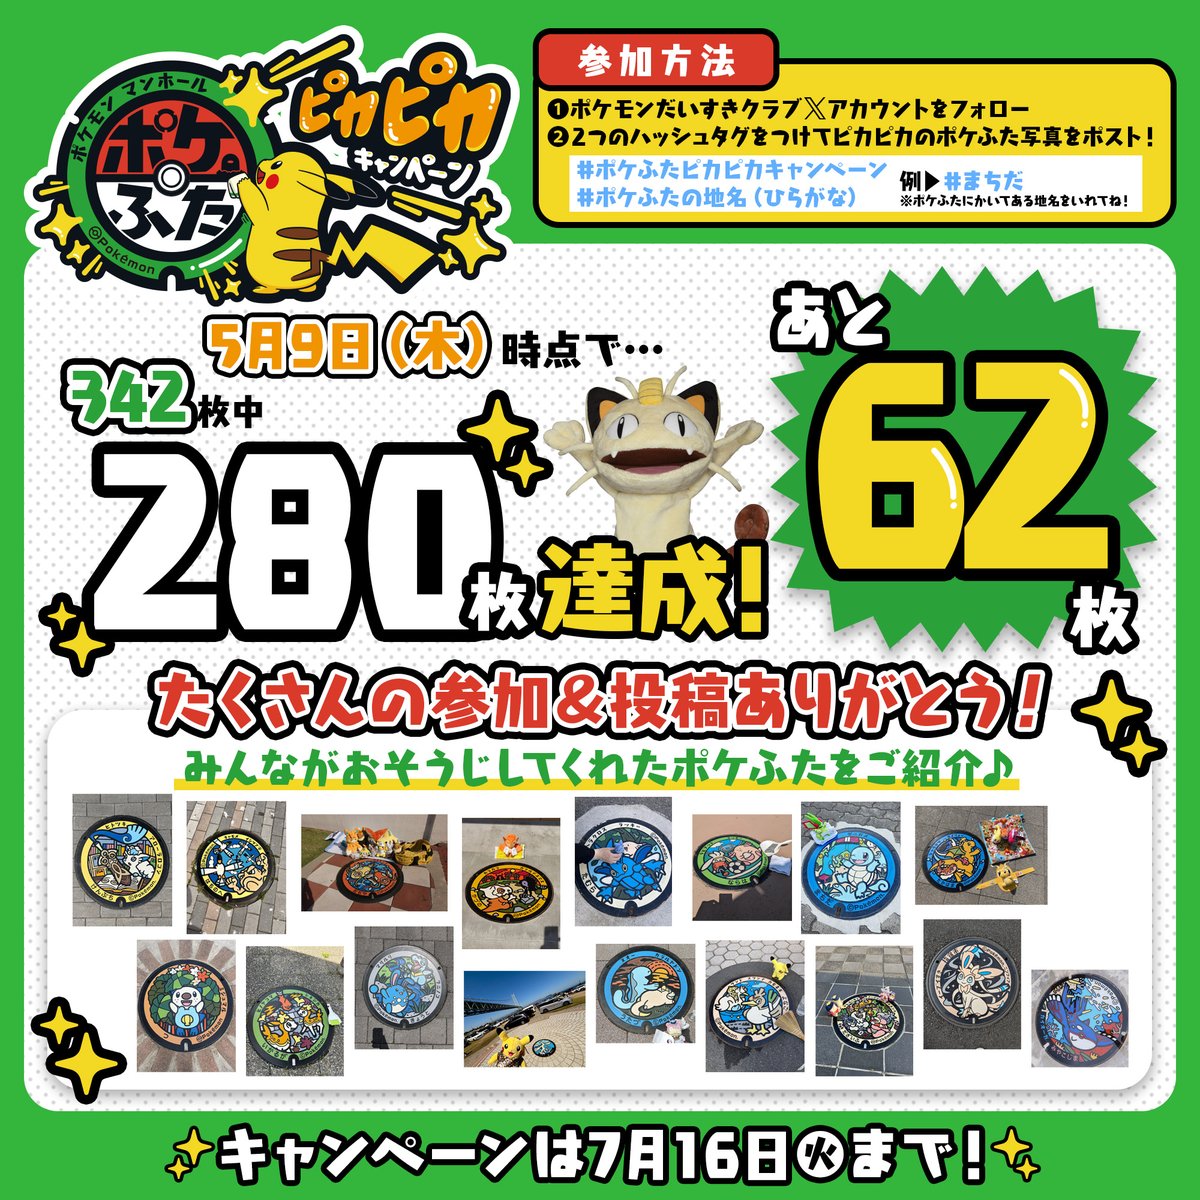 #ポケふたピカピカキャンペーン 
たくさんの参加＆投稿ありがとう！
5月9日（木）時点で280枚のポケふたがピカピカになったよ✨

目標達成まであと【62枚】👀
ツリーに残りのポケふた一覧を載せるよ❣

⚠️参加前には必ずお掃除動画と以下キャンペーンページを確認してね！
pokemon.jp/info/tsubuyaki…